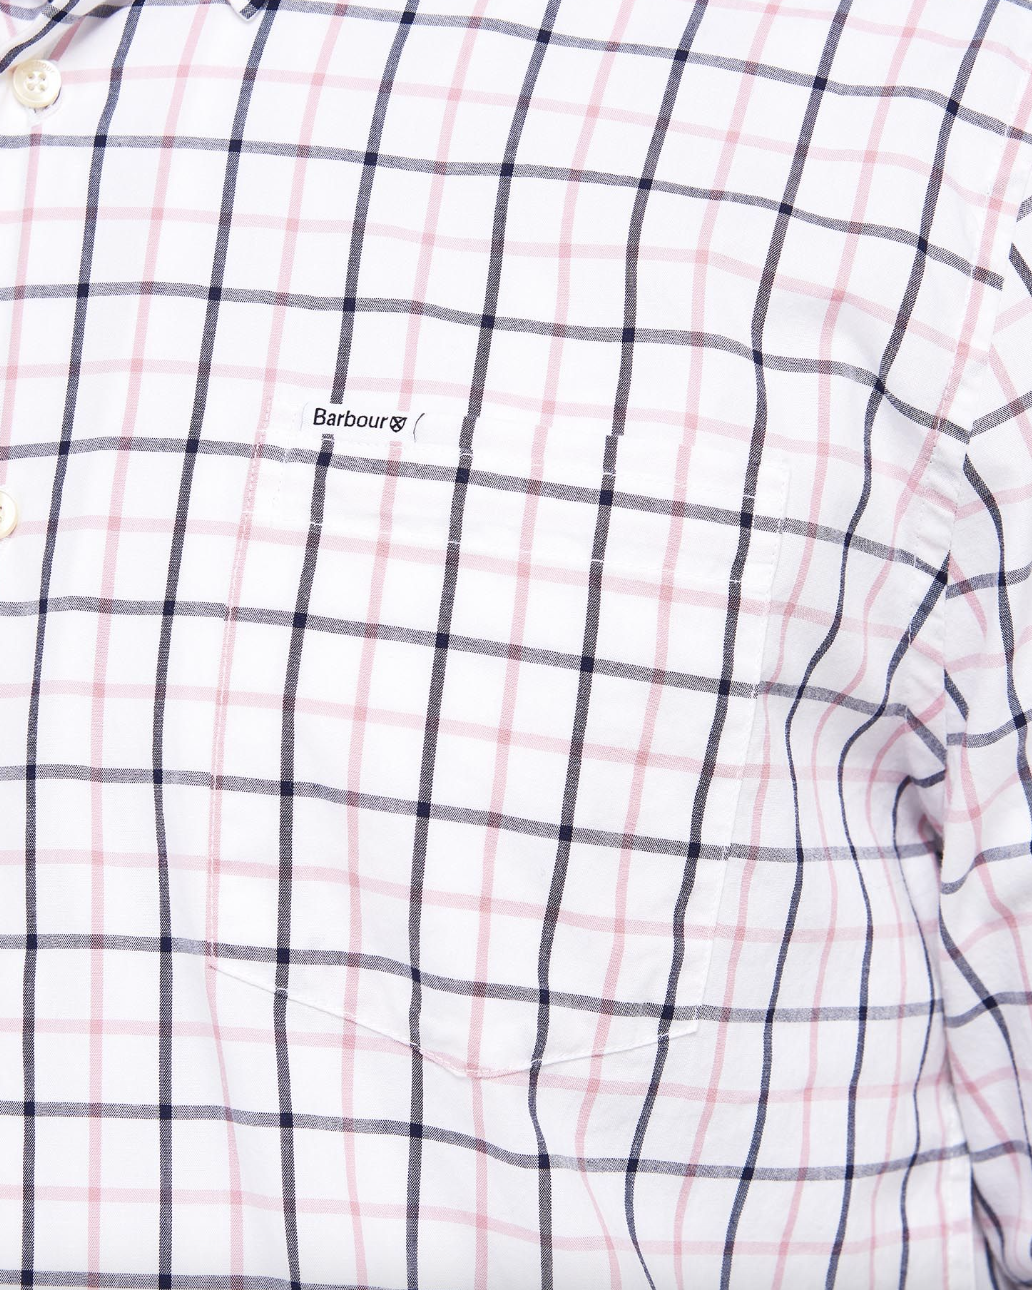 Barbour Skjorte Bradwell Bomull Ruter Rosa logo på brytlommen